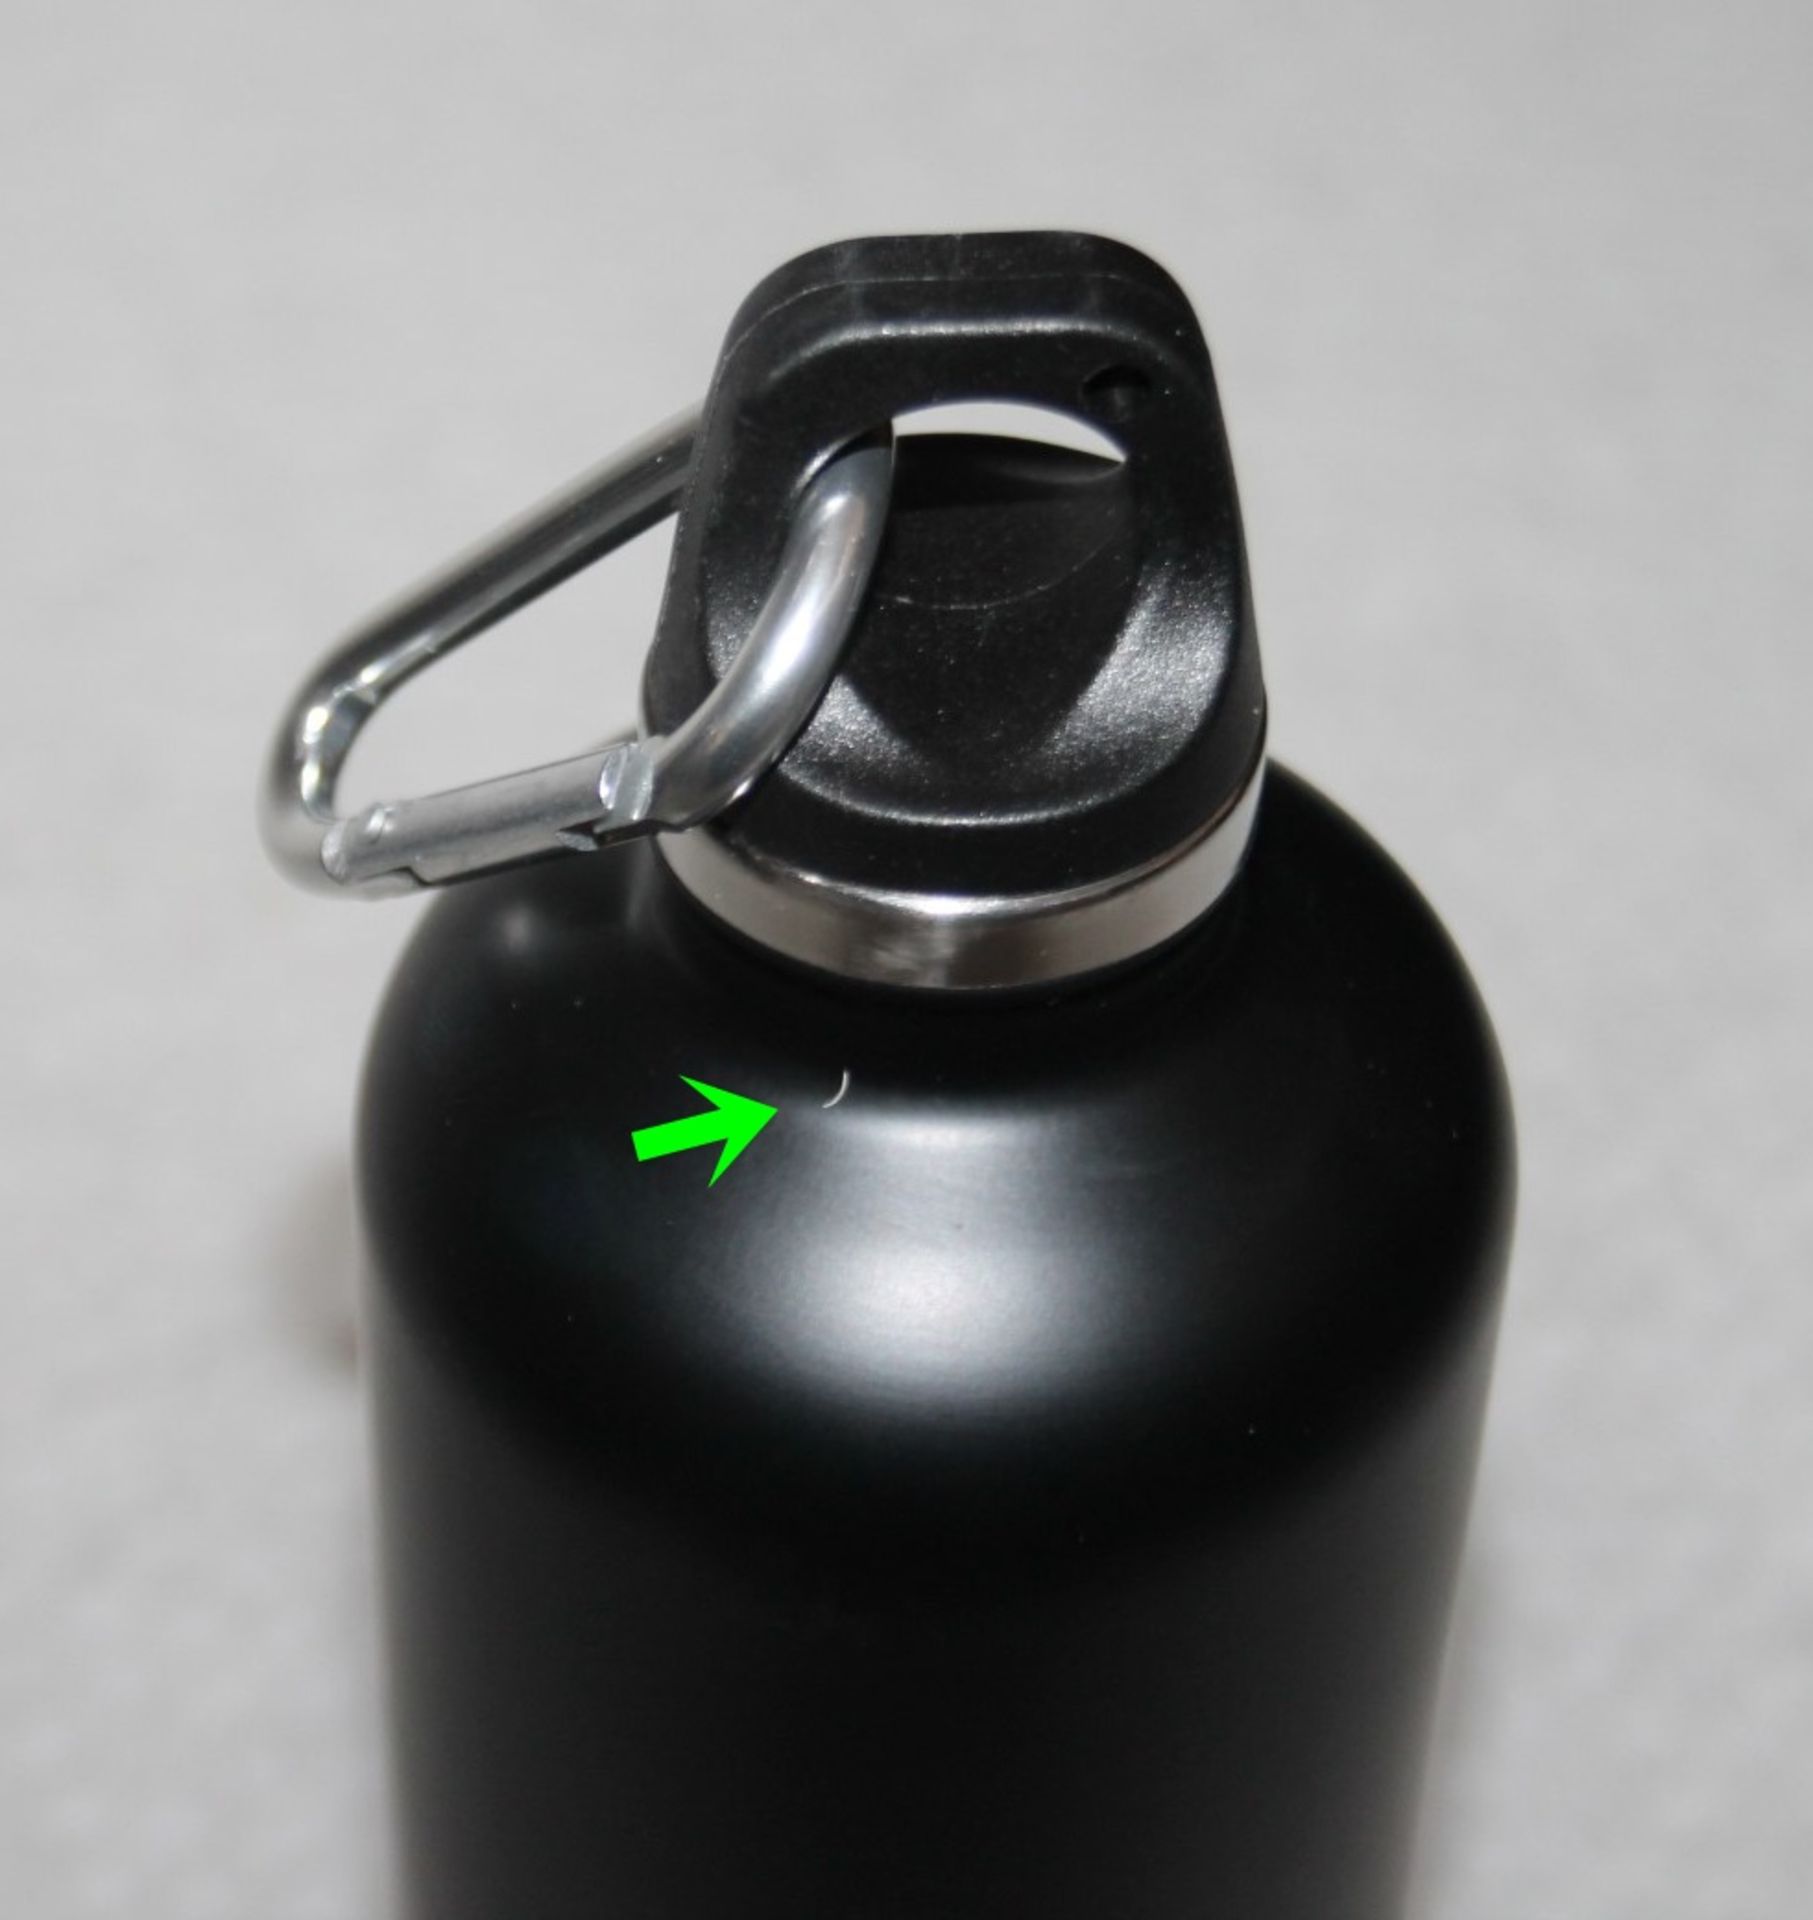 1 x PRADA Stainless Steel Water Bottle In Black, 500 ml - Original Price £90.00 - Unused Boxed Stock - Image 5 of 6